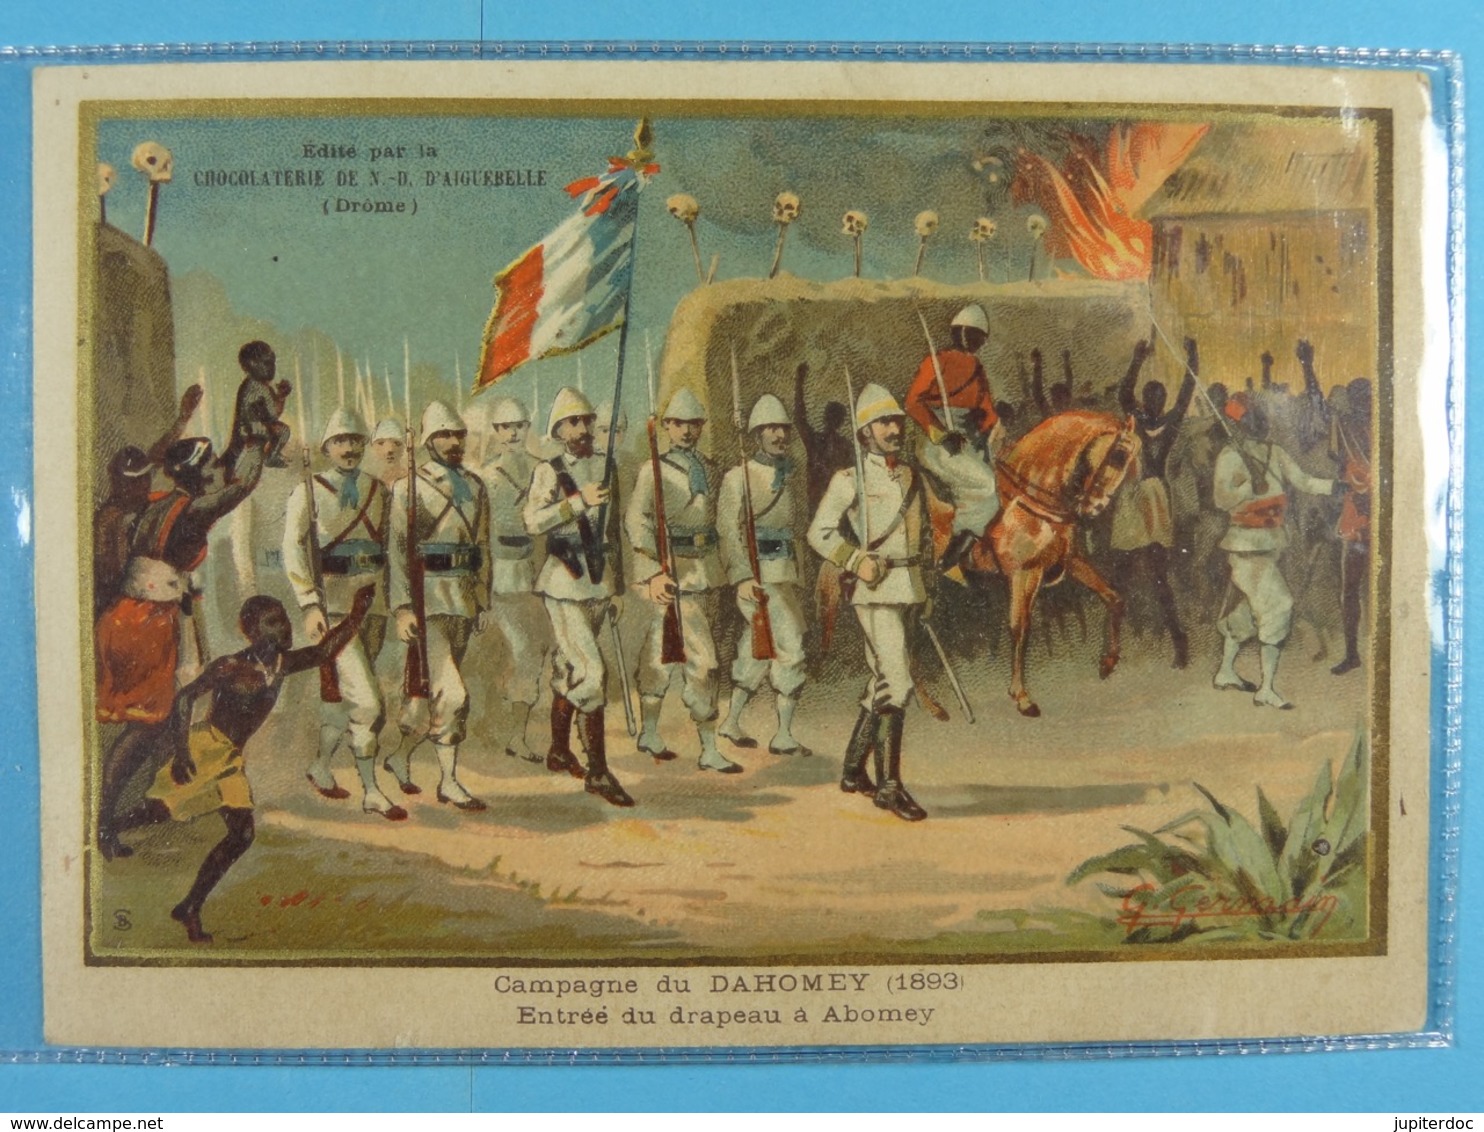 Chocolat D'Aiguebelle Campagne De Dahomey (1893) Entrée Du Drapeau à Abomey (13,5 Cm X 9,5 Cm) /4/ - Aiguebelle